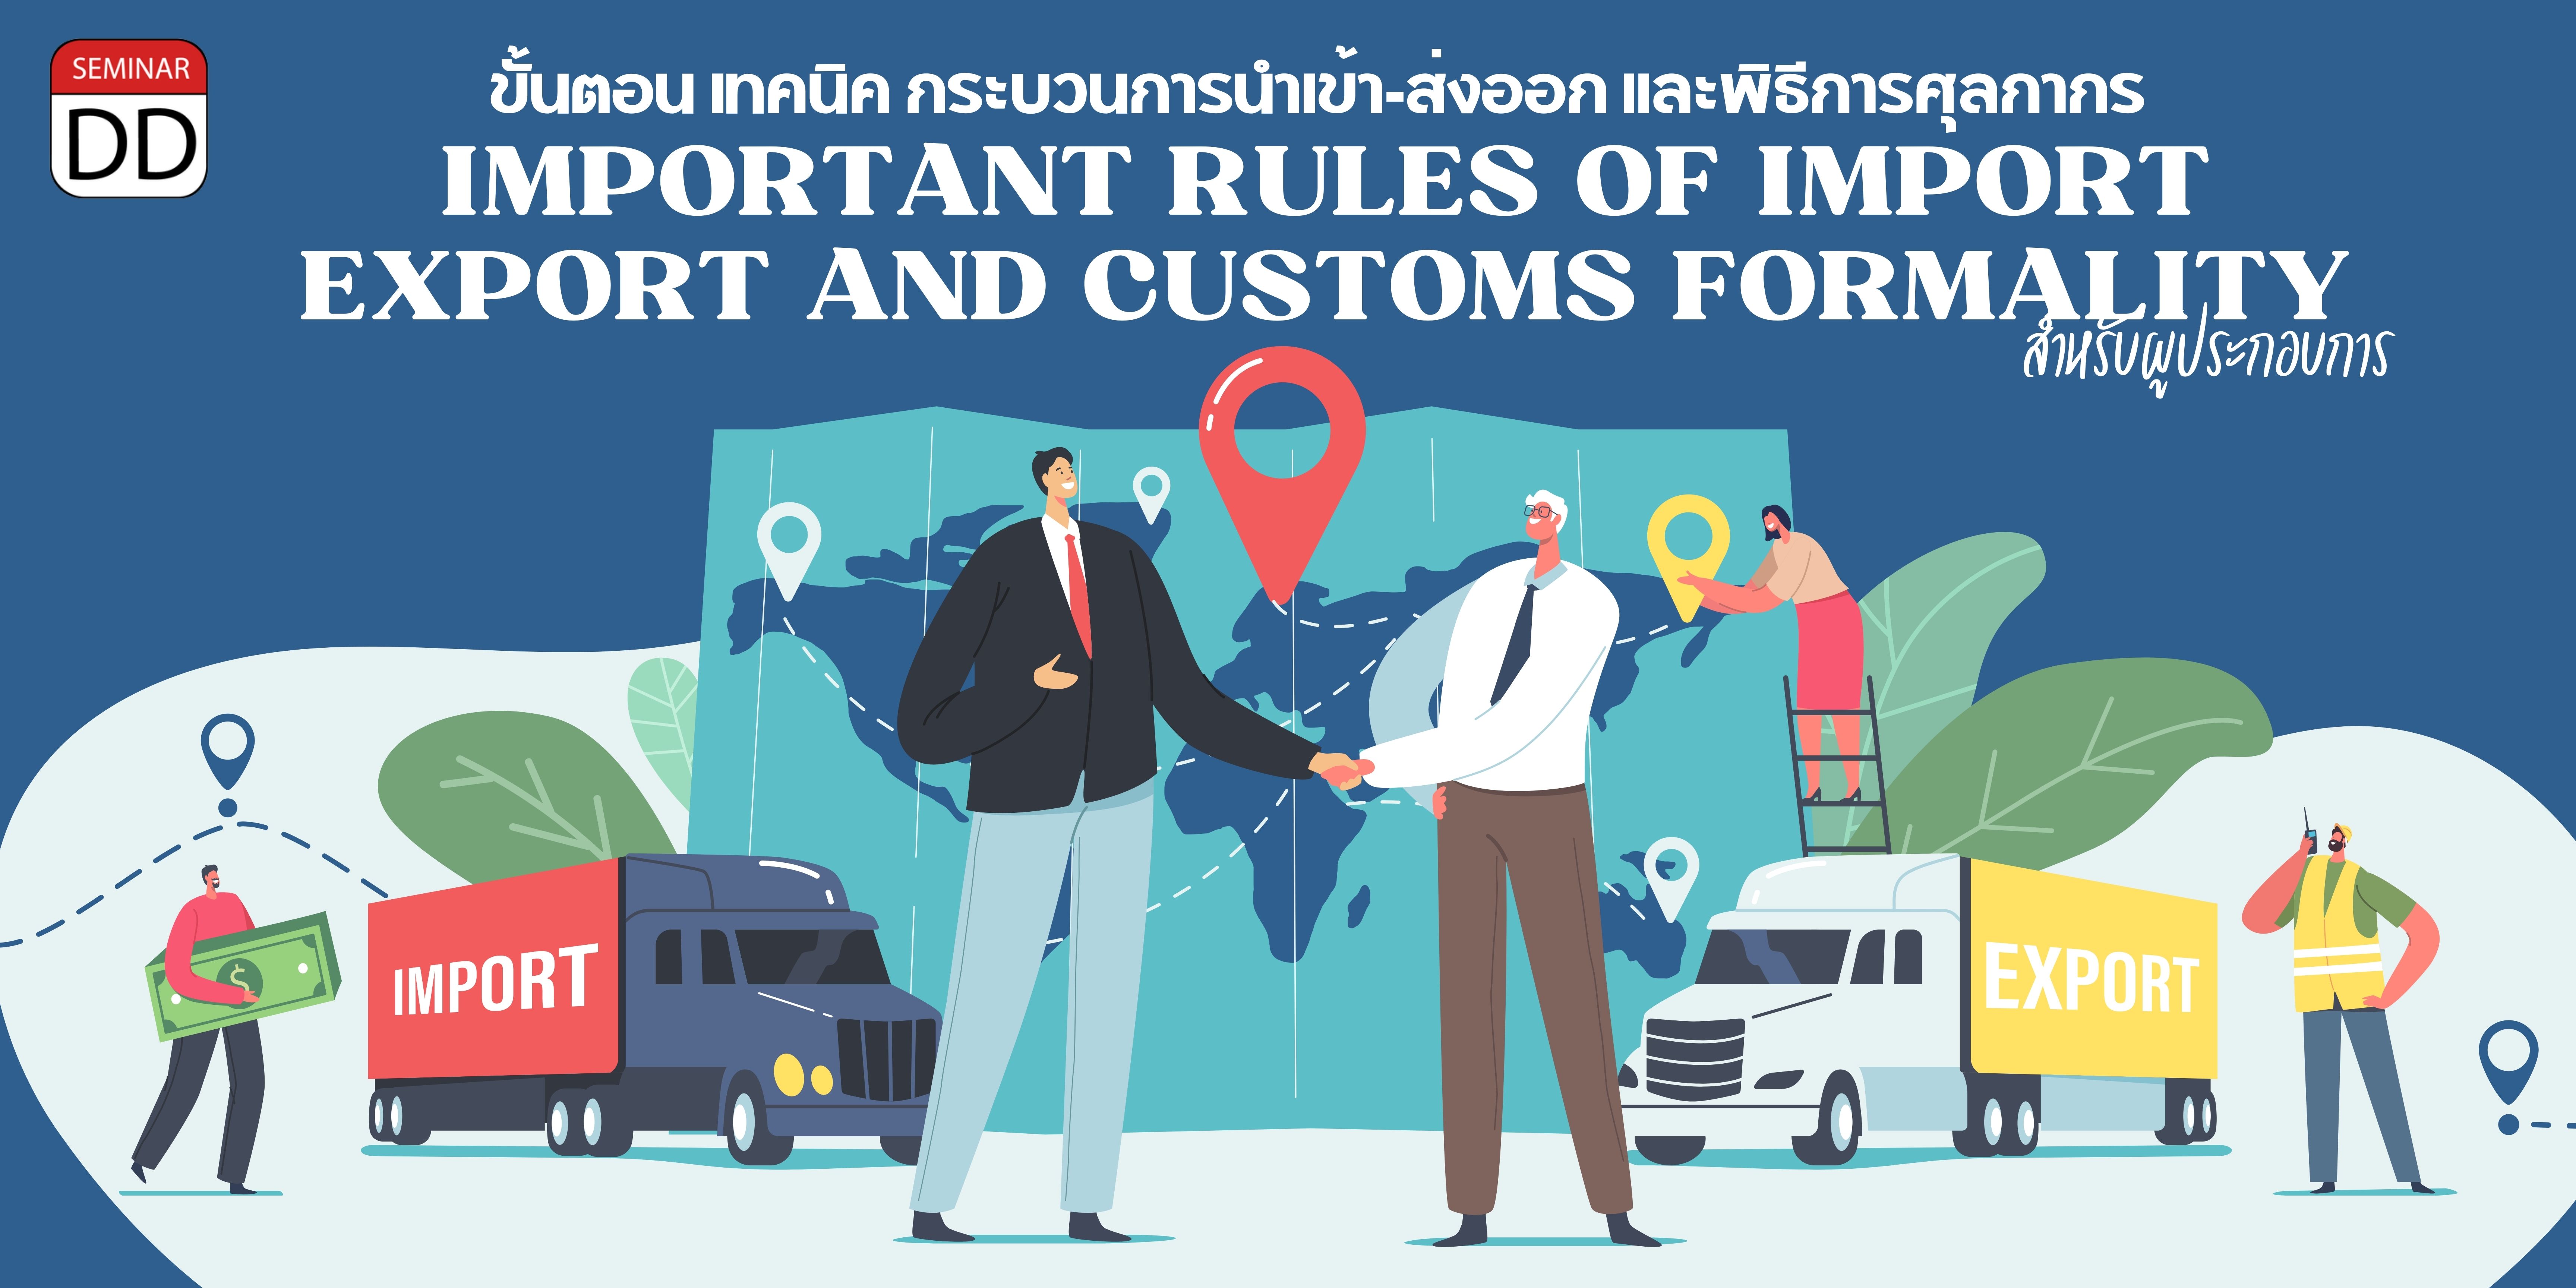 หลักสูตรอบรม หลักสูตร ขั้นตอน เทคนิค กระบวนการนำเข้า-ส่งออก และพิธีการศุลกากร สำหรับผู้ประกอบการ ( Important Rules of Export, Import and Customs Formality )